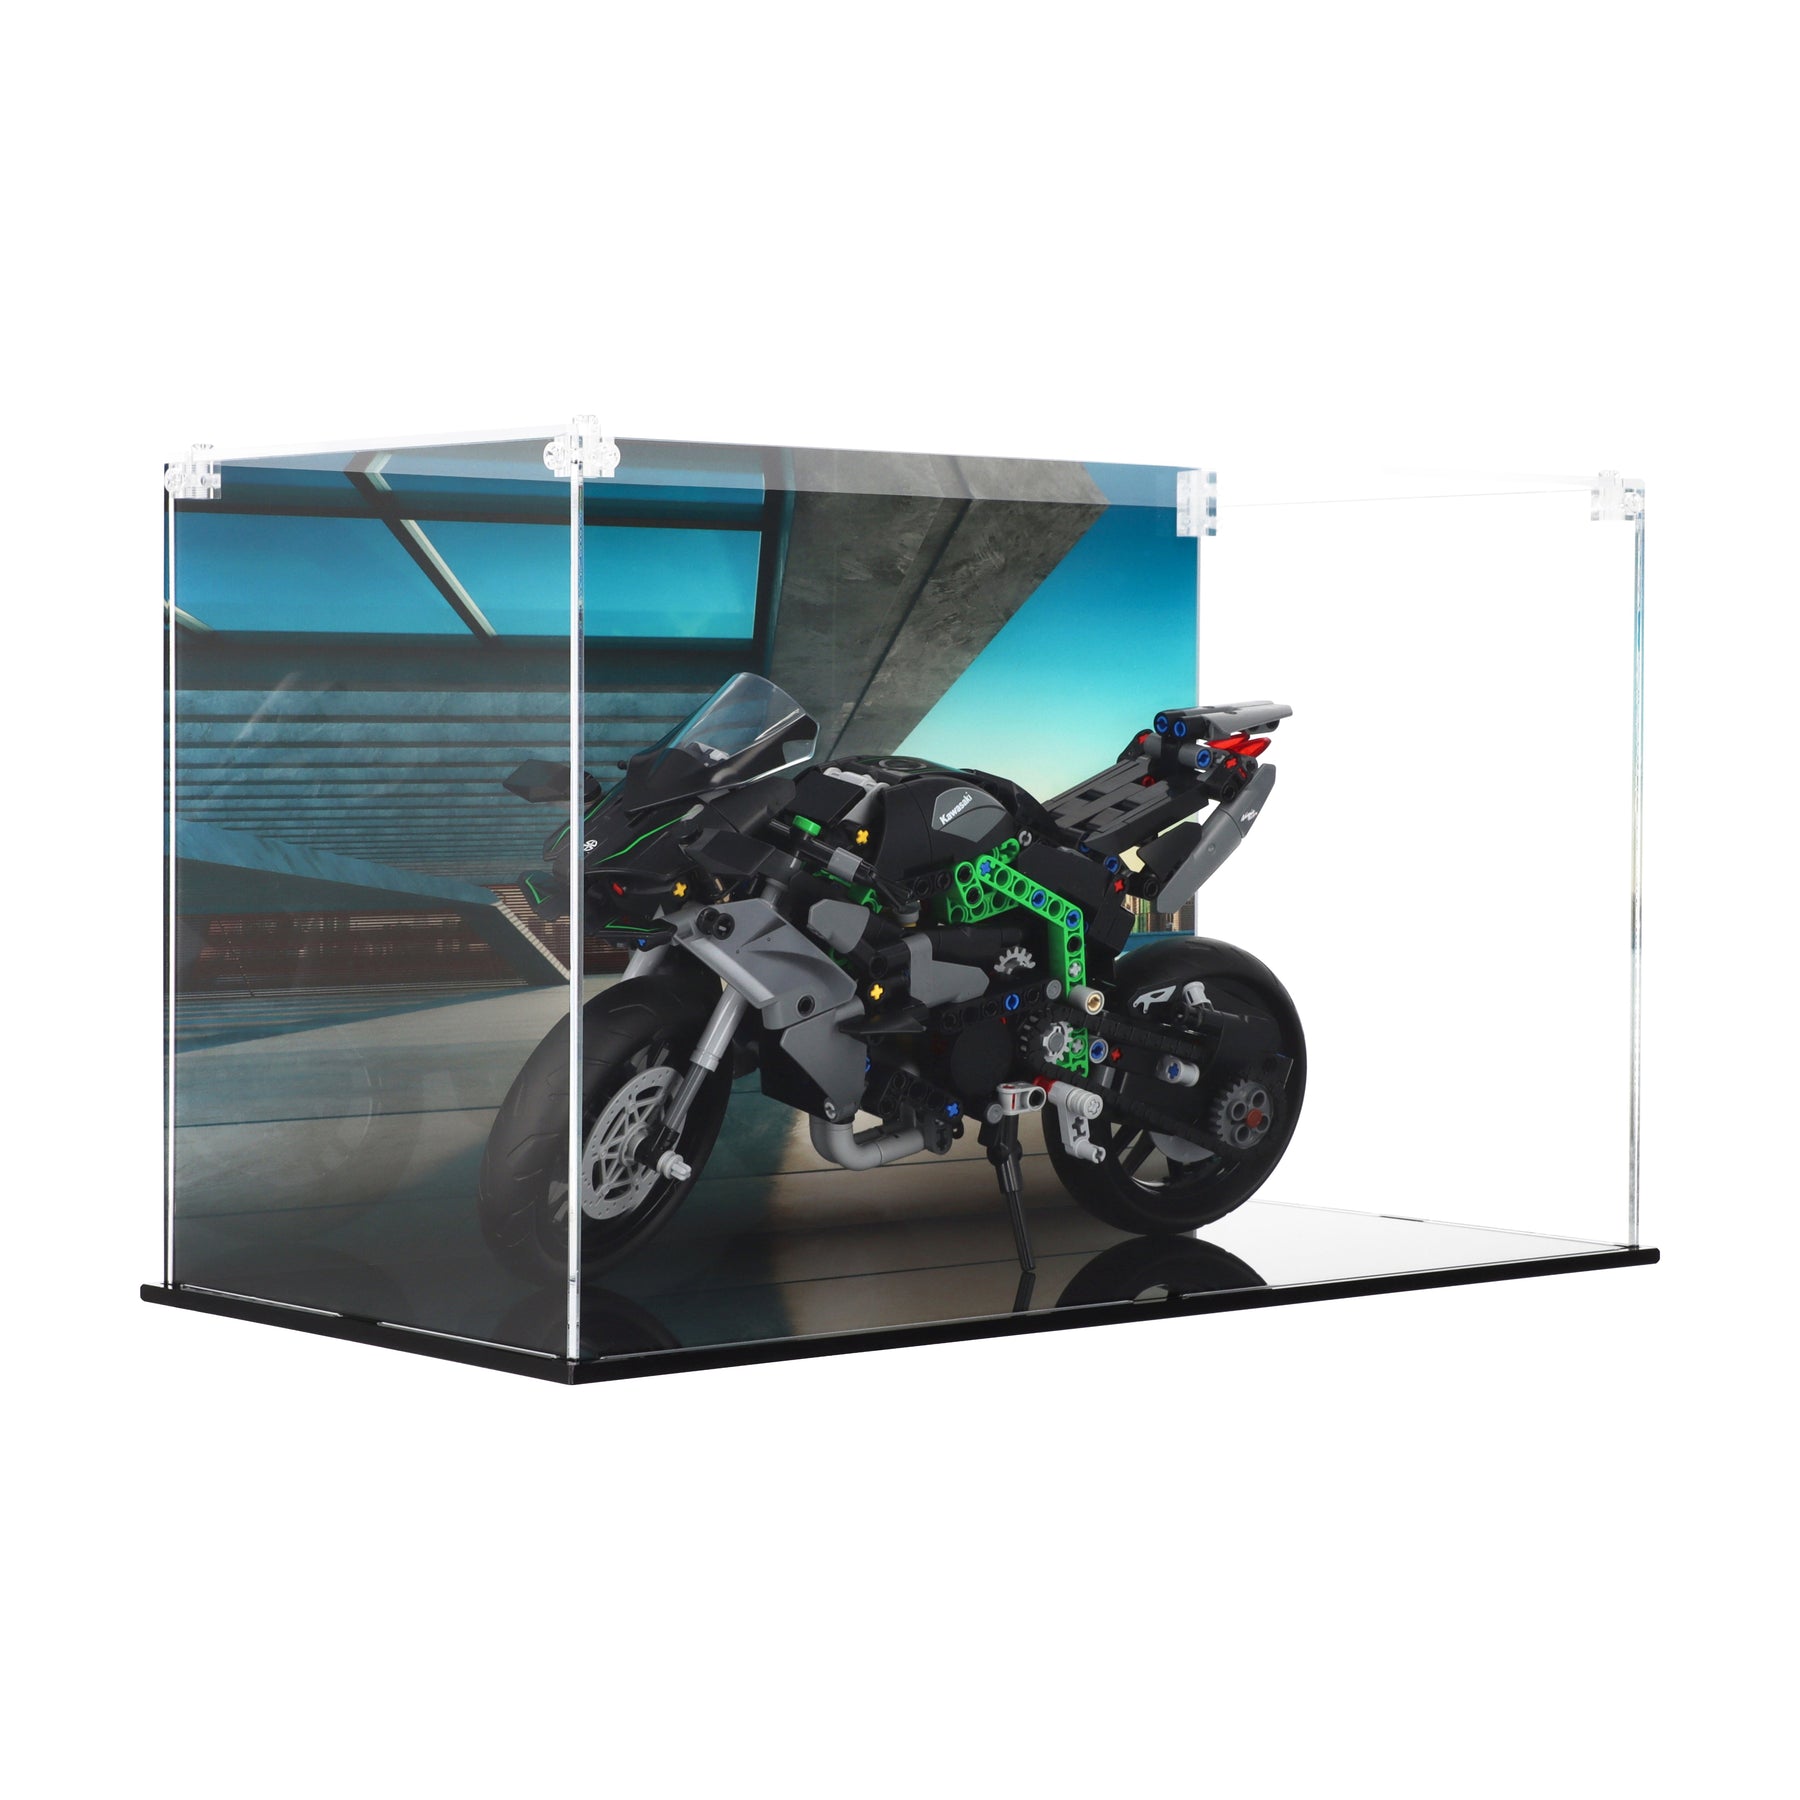 Lego 42170 Kawasaki Ninja H2R Motorcycle - Display Case